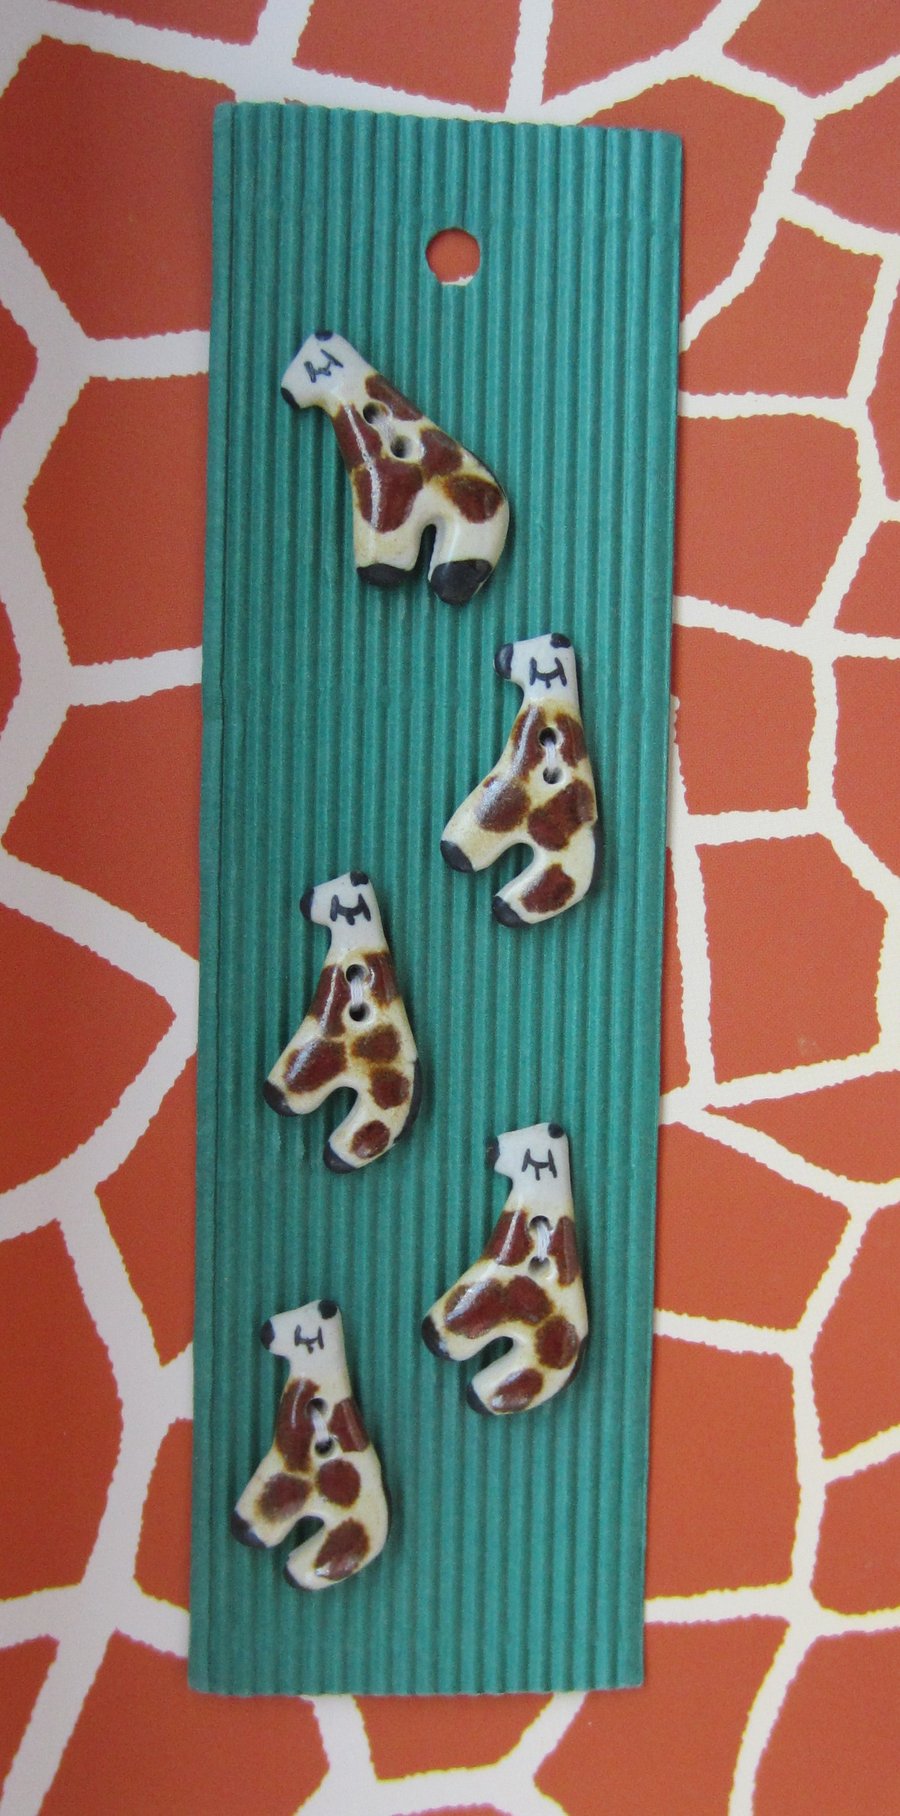 5 Ceramic Giraffe Buttons